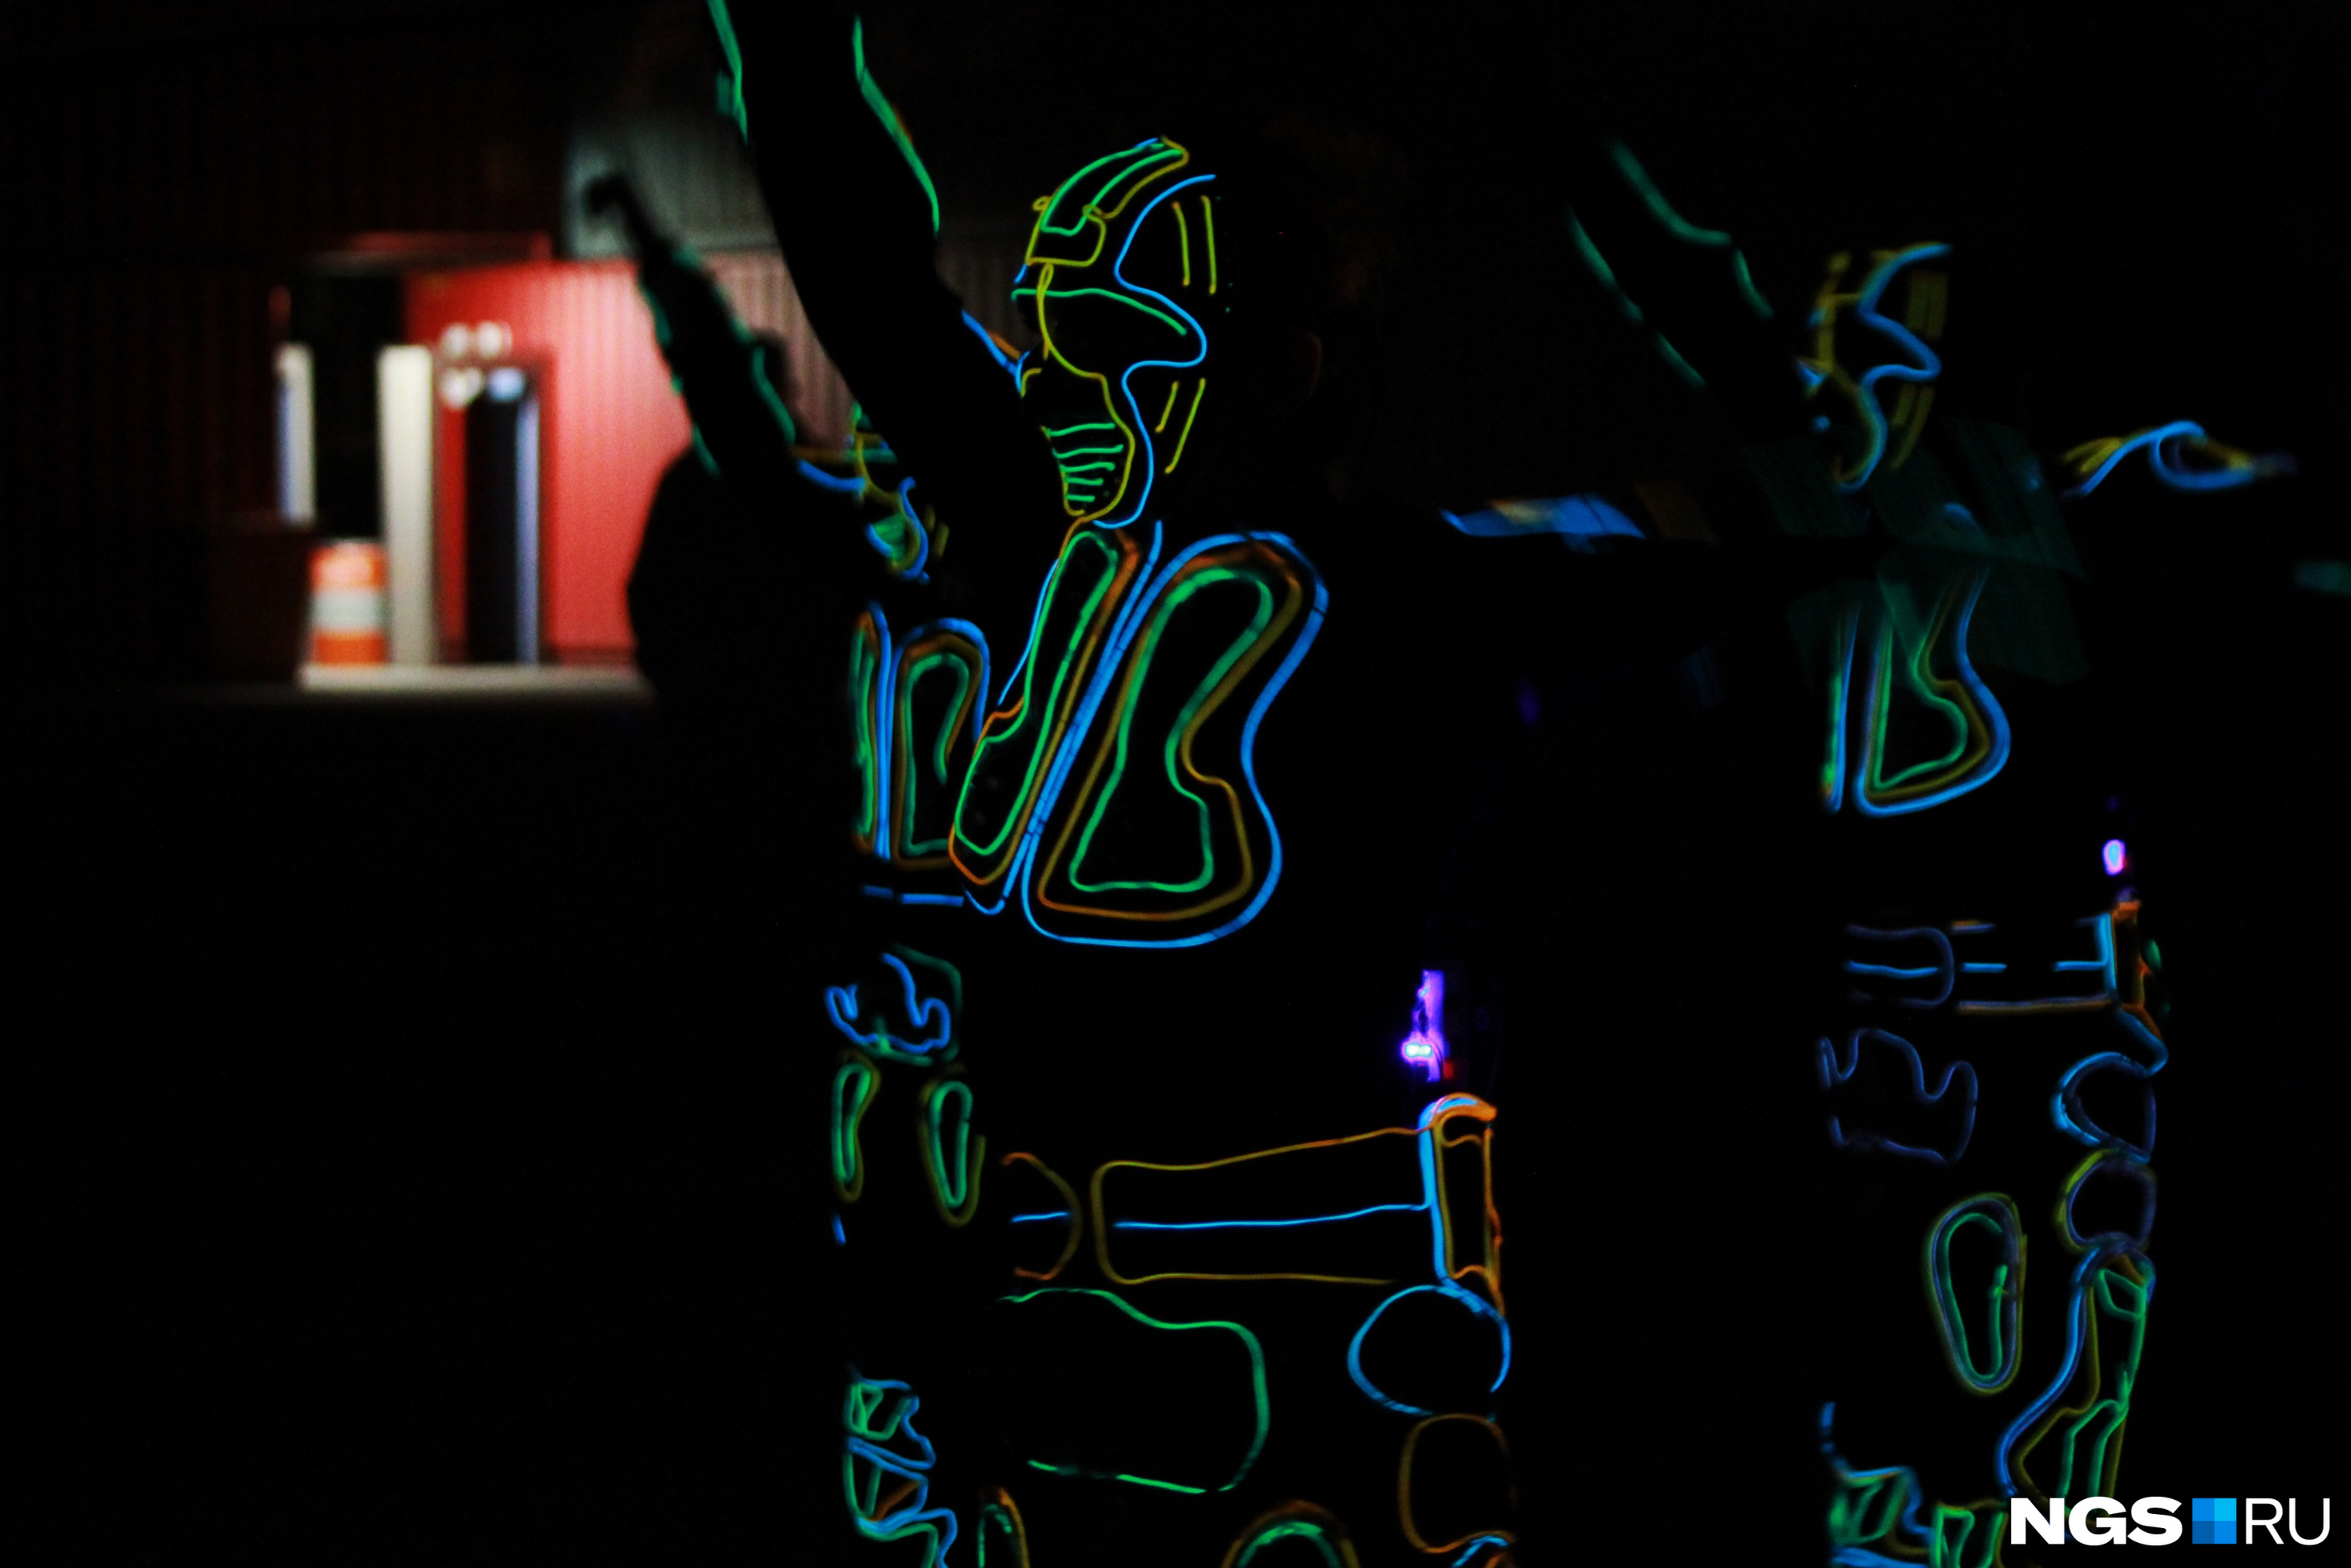 Перед гостями фестиваля в темноте танцевали люди в светящихся костюмах